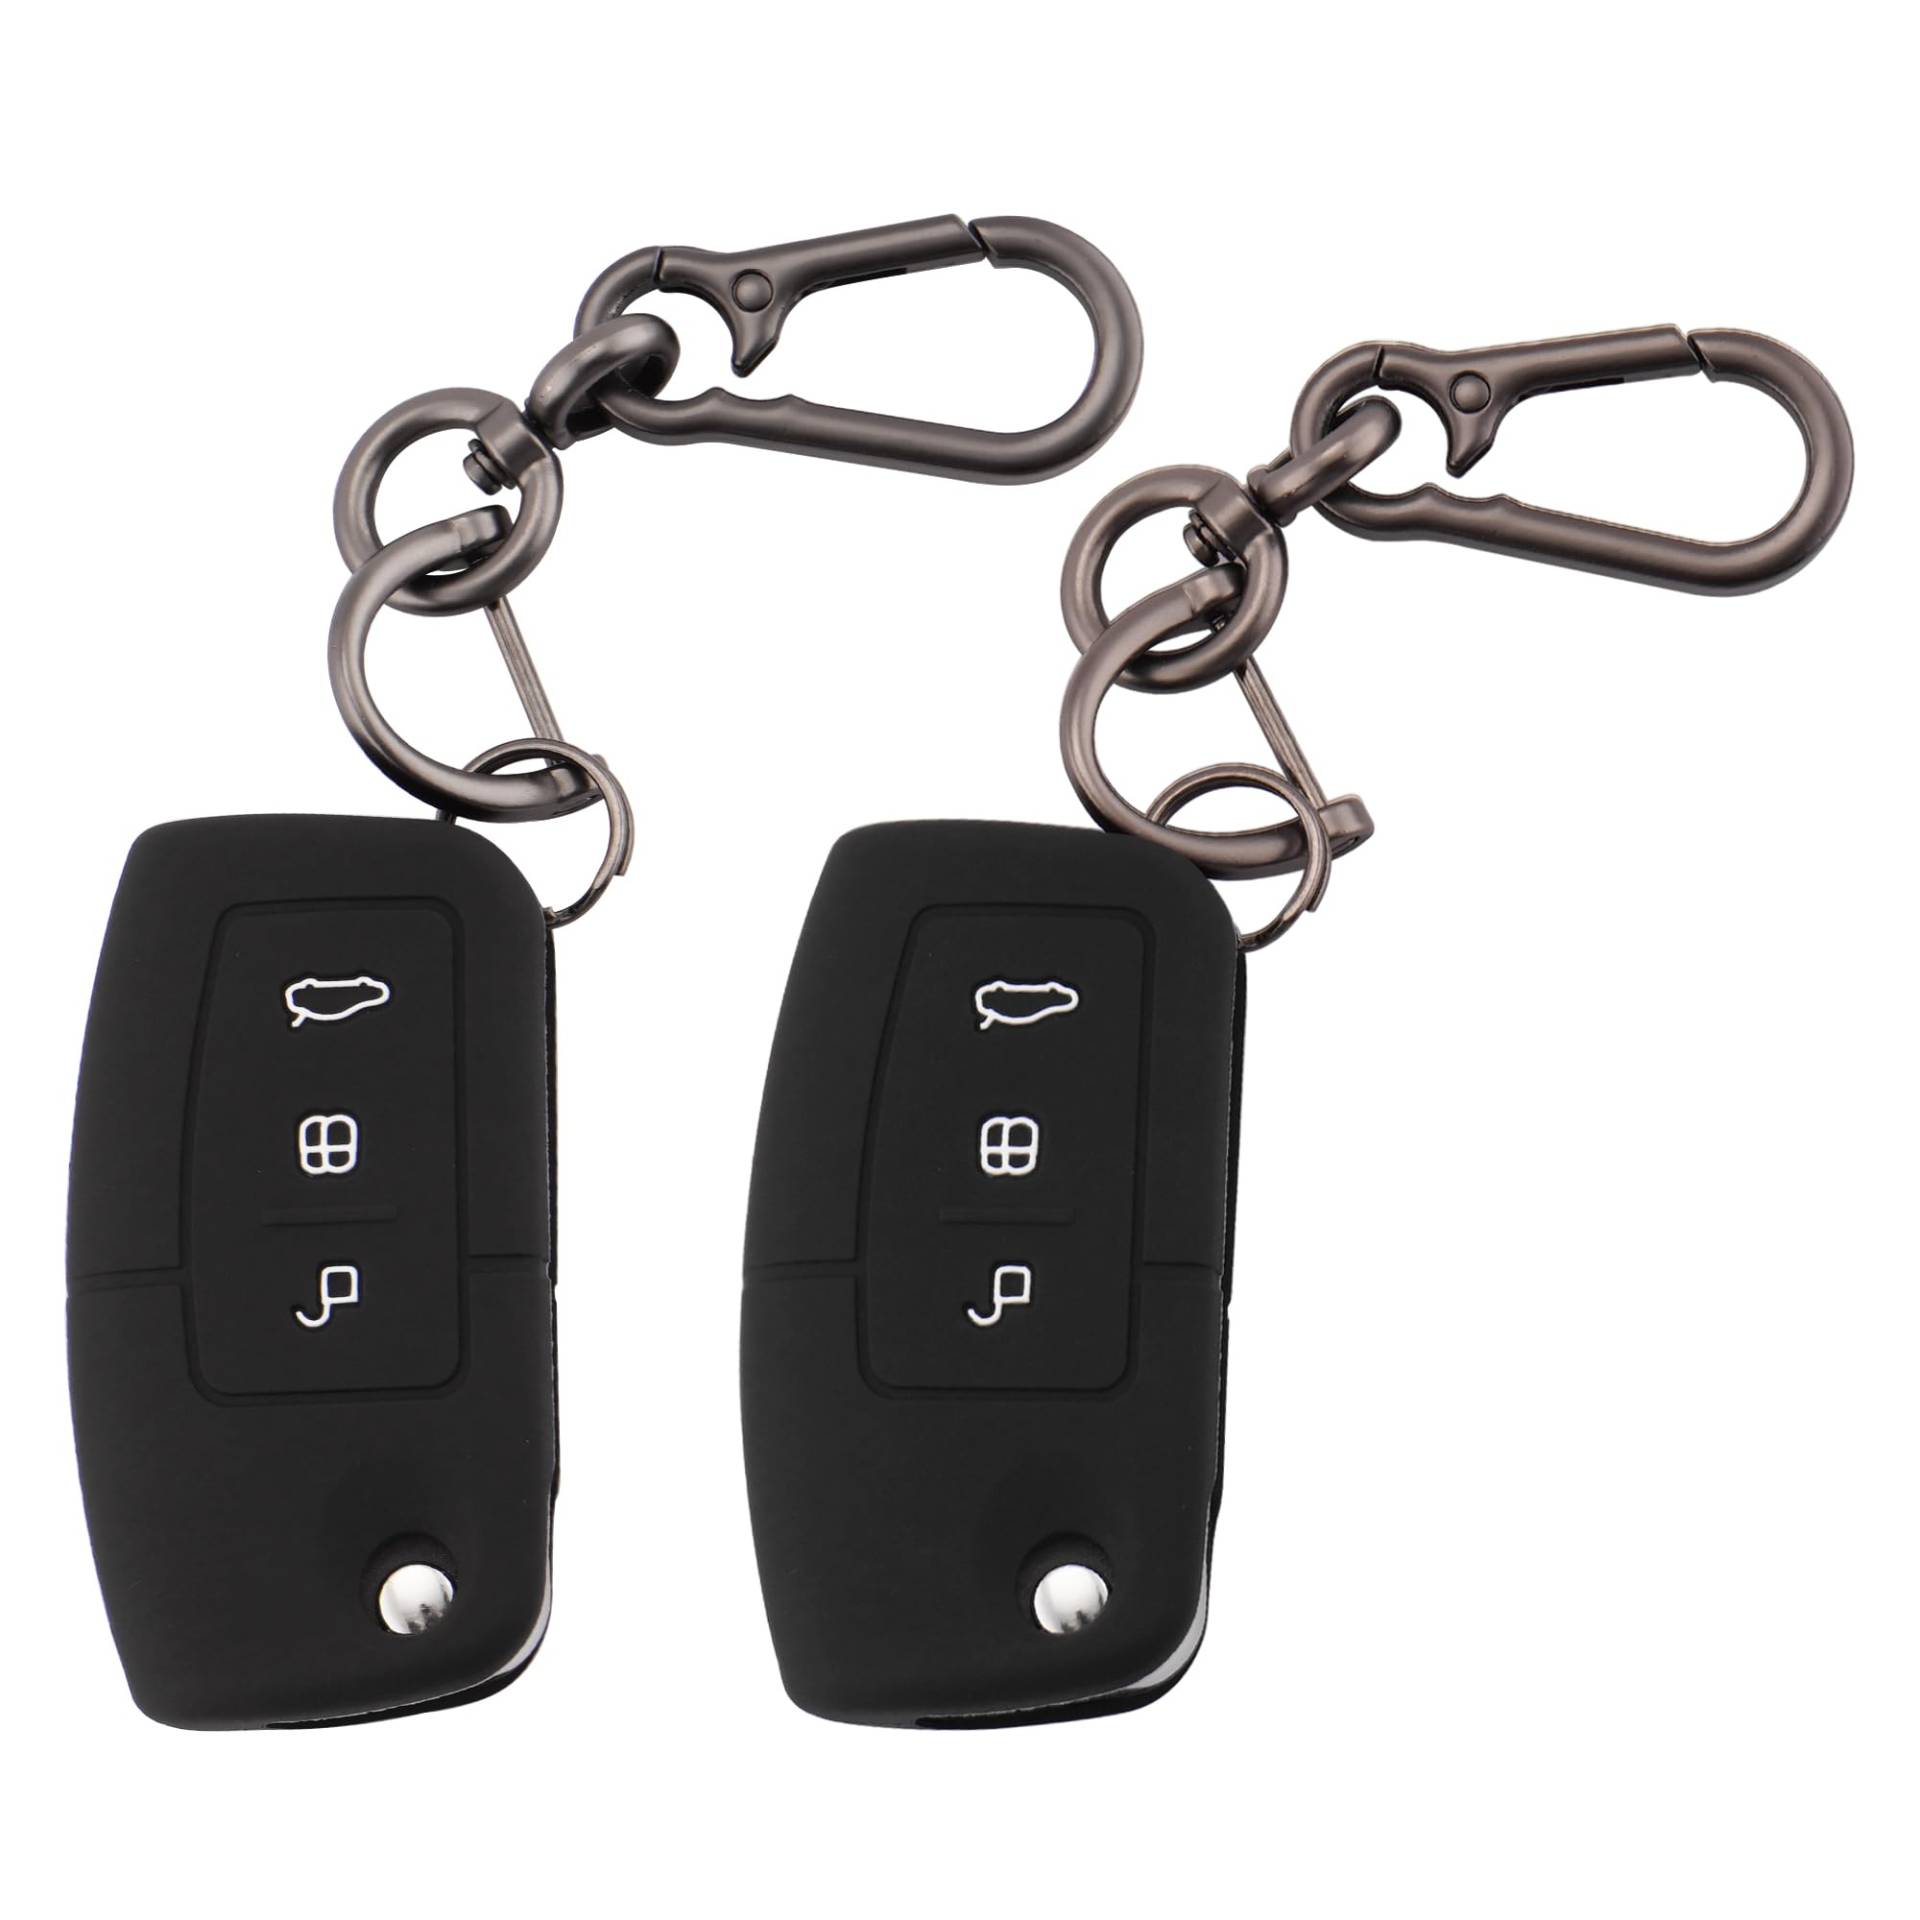 ERMWALR Autoschlüsselhüllen, Schlüsselanhänger, kompatibel mit Ford 3-Tasten, Focus, Fiesta, Galaxy, Kuga, C-Max, S-Max, Mondeo, MK4, klappbarer Schlüsselanhänger, 2 Stück (Frd-3F-BB) von ERMWALR